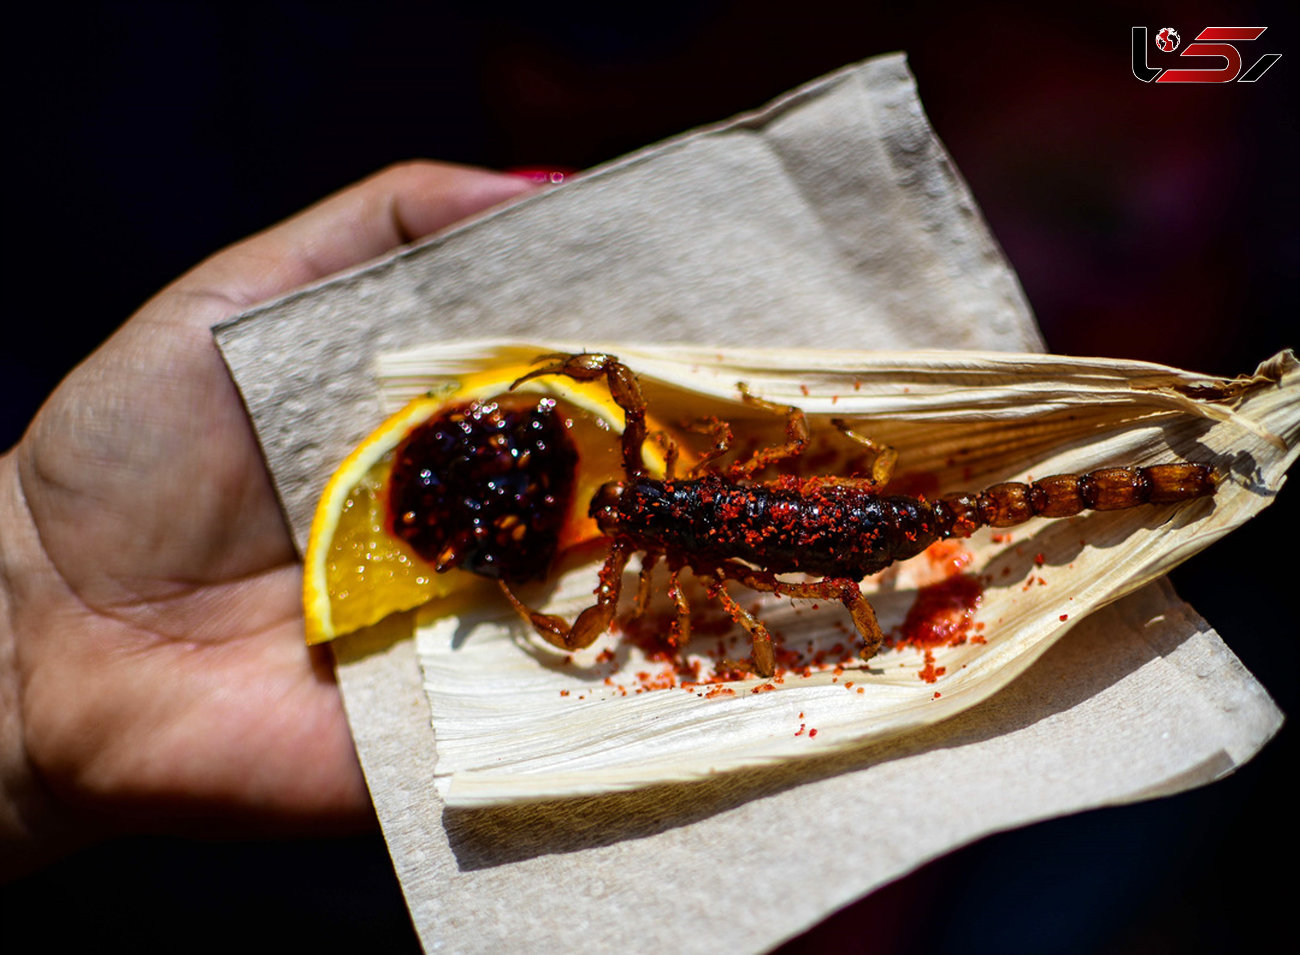 ایده جدید یک رستوران مکزیکی،منوی حشرات+تصاویر